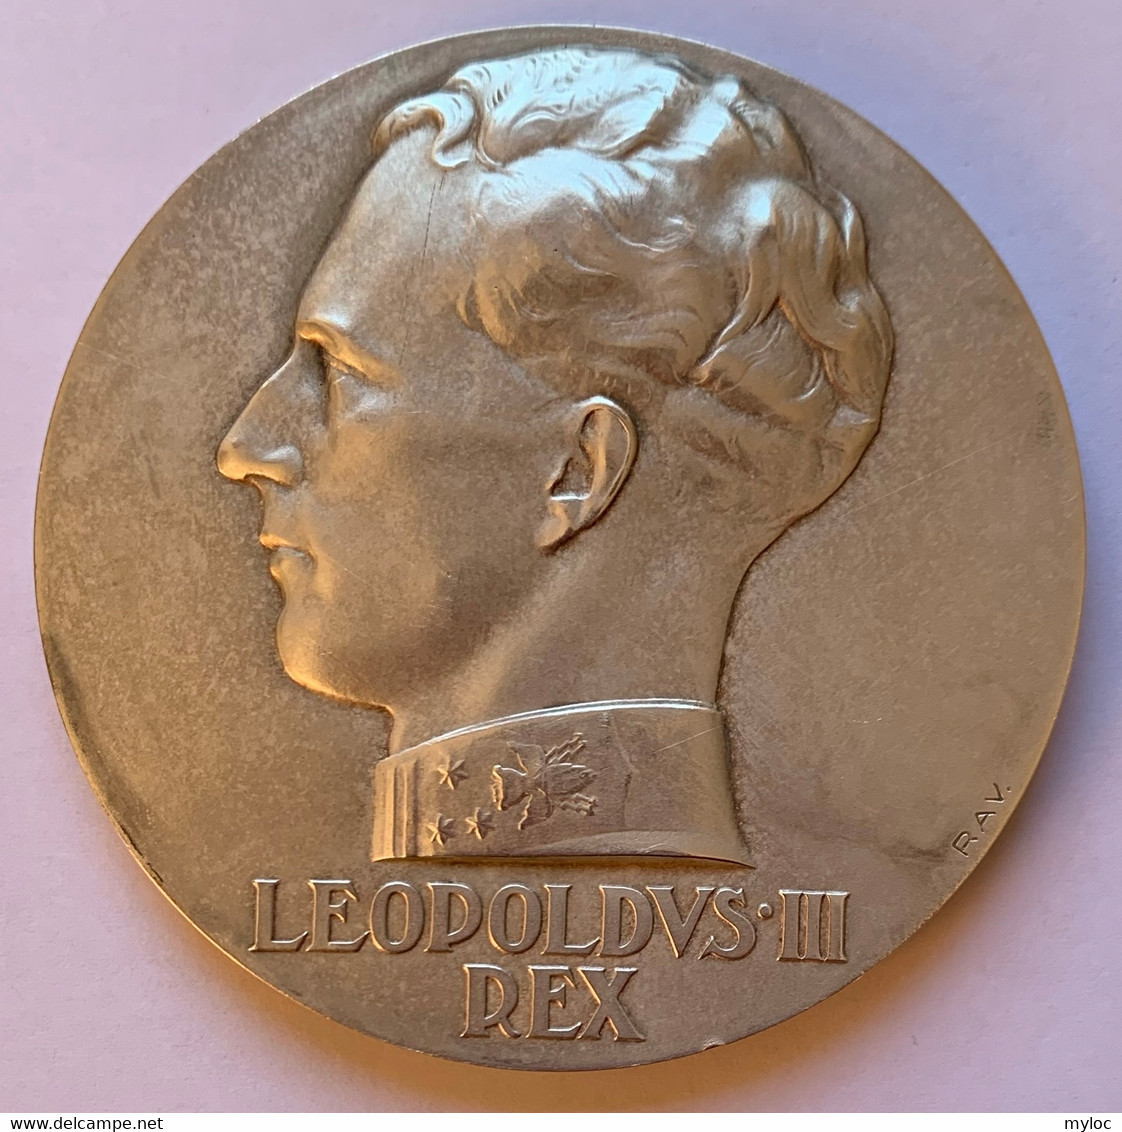 Médaille Bronze Argenté. Ecole De Musique Saint-Gilles-Lez-Bruxelles. Déclamation Henny Weissbort 1938. Léopold III Rex - Professionali / Di Società